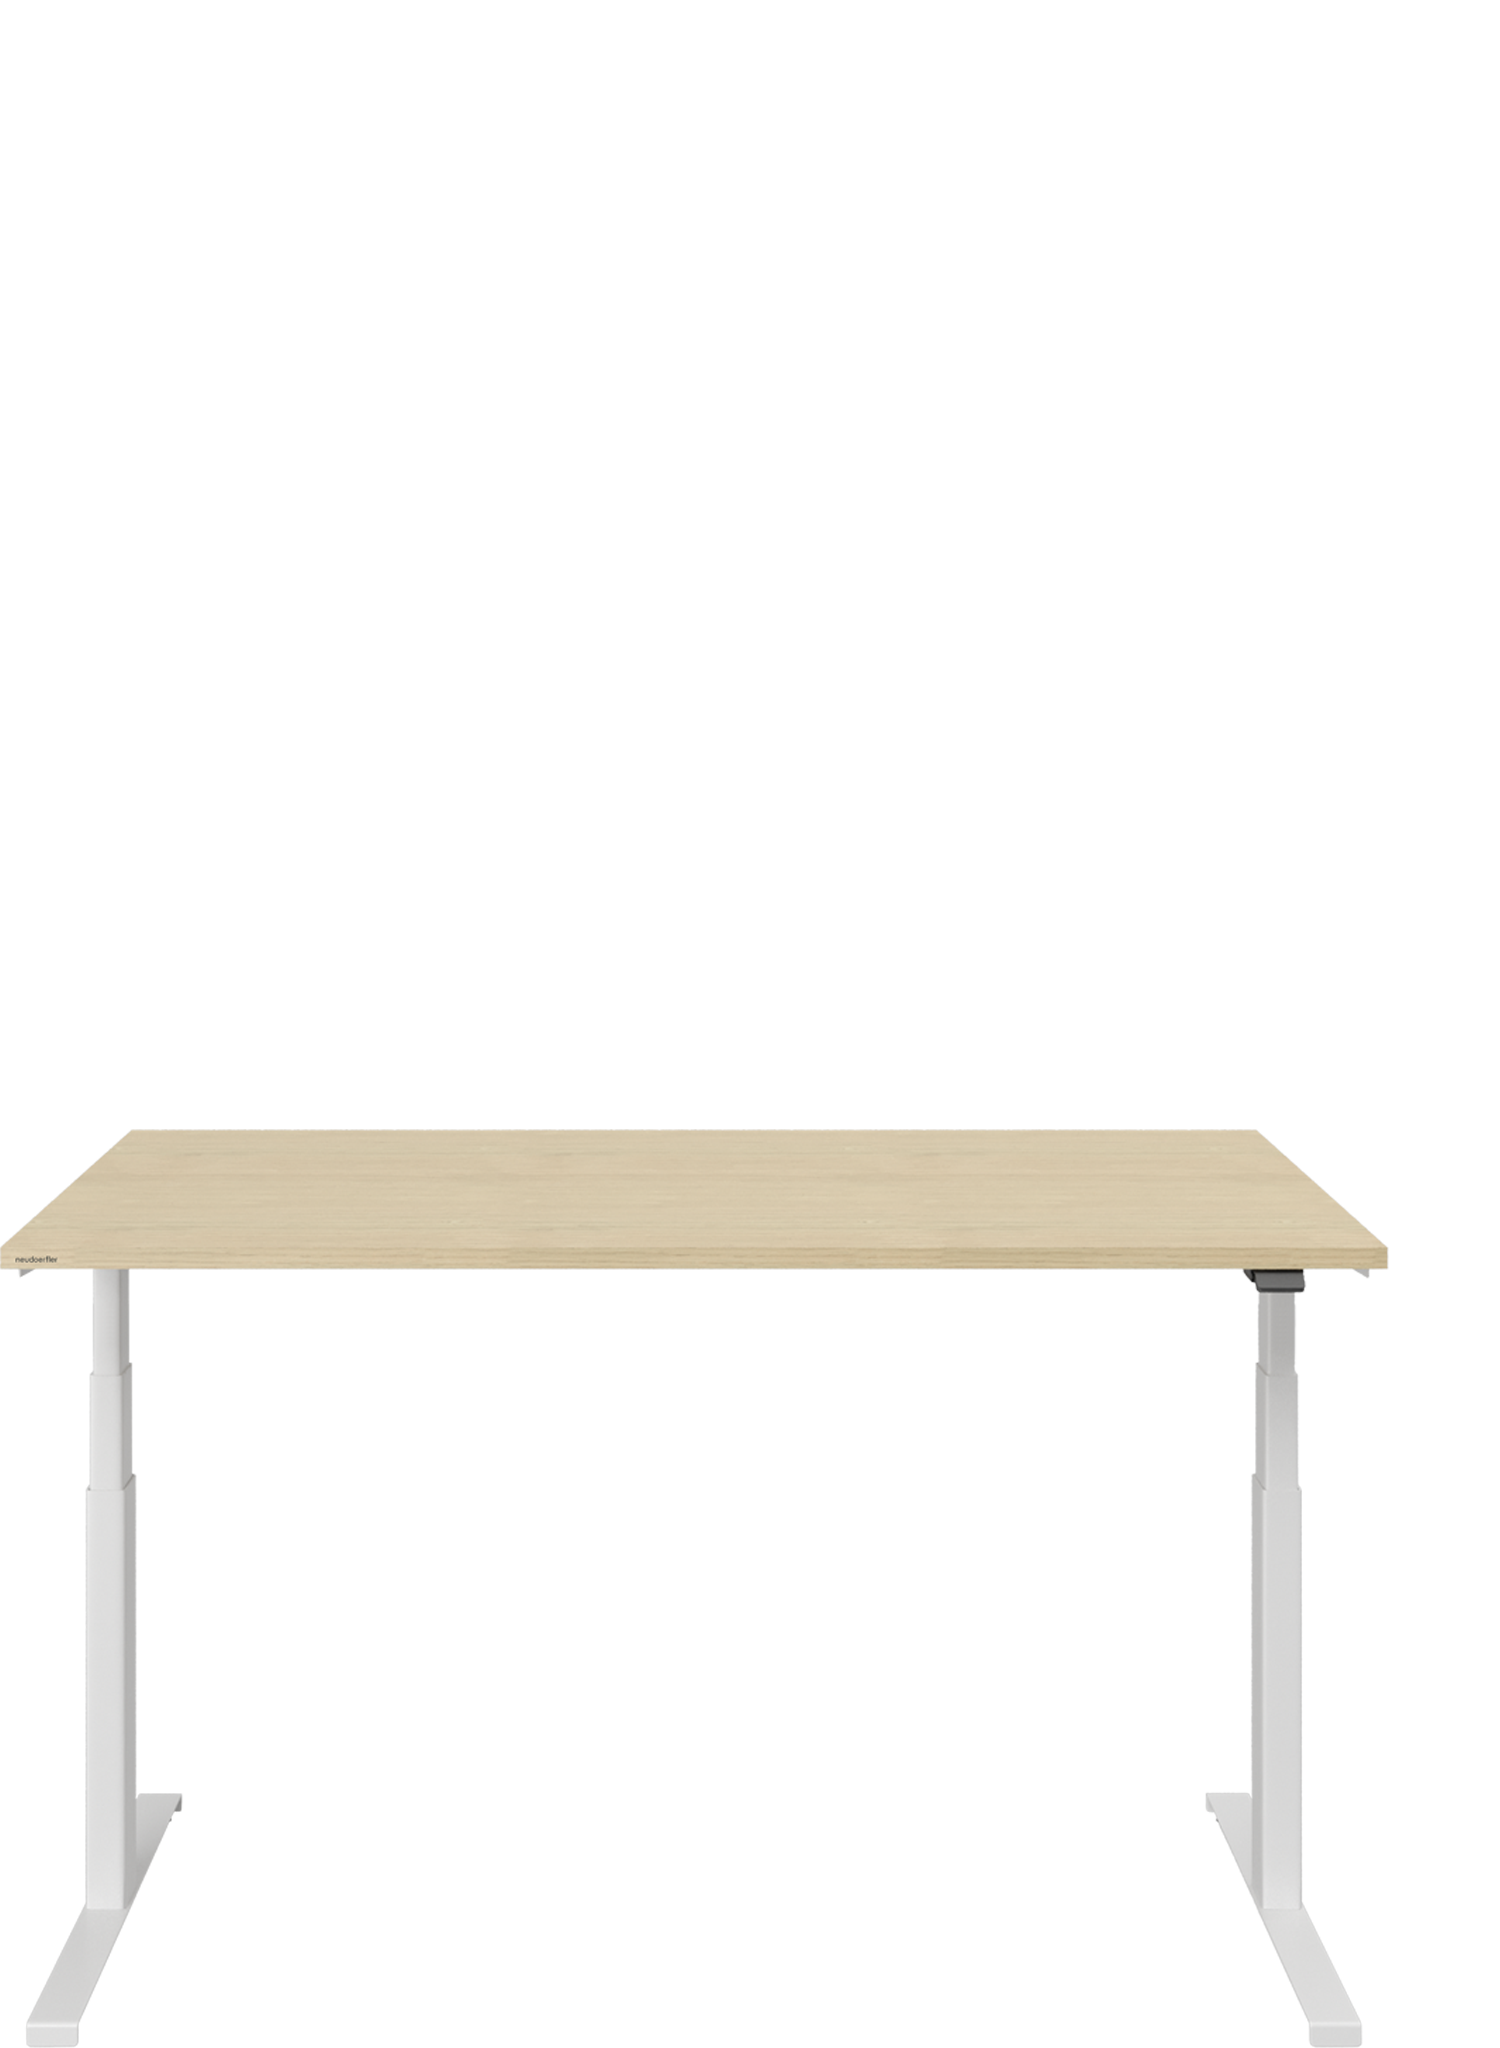 Von vorne sieht man einen höhenverstellbaren Tisch mit weißem Gestell. Die Tischplatte ist aus Holz. Auf der rechten Seite des Tisches befindet sich der schwarze Hebel für die Höhenverstellung.